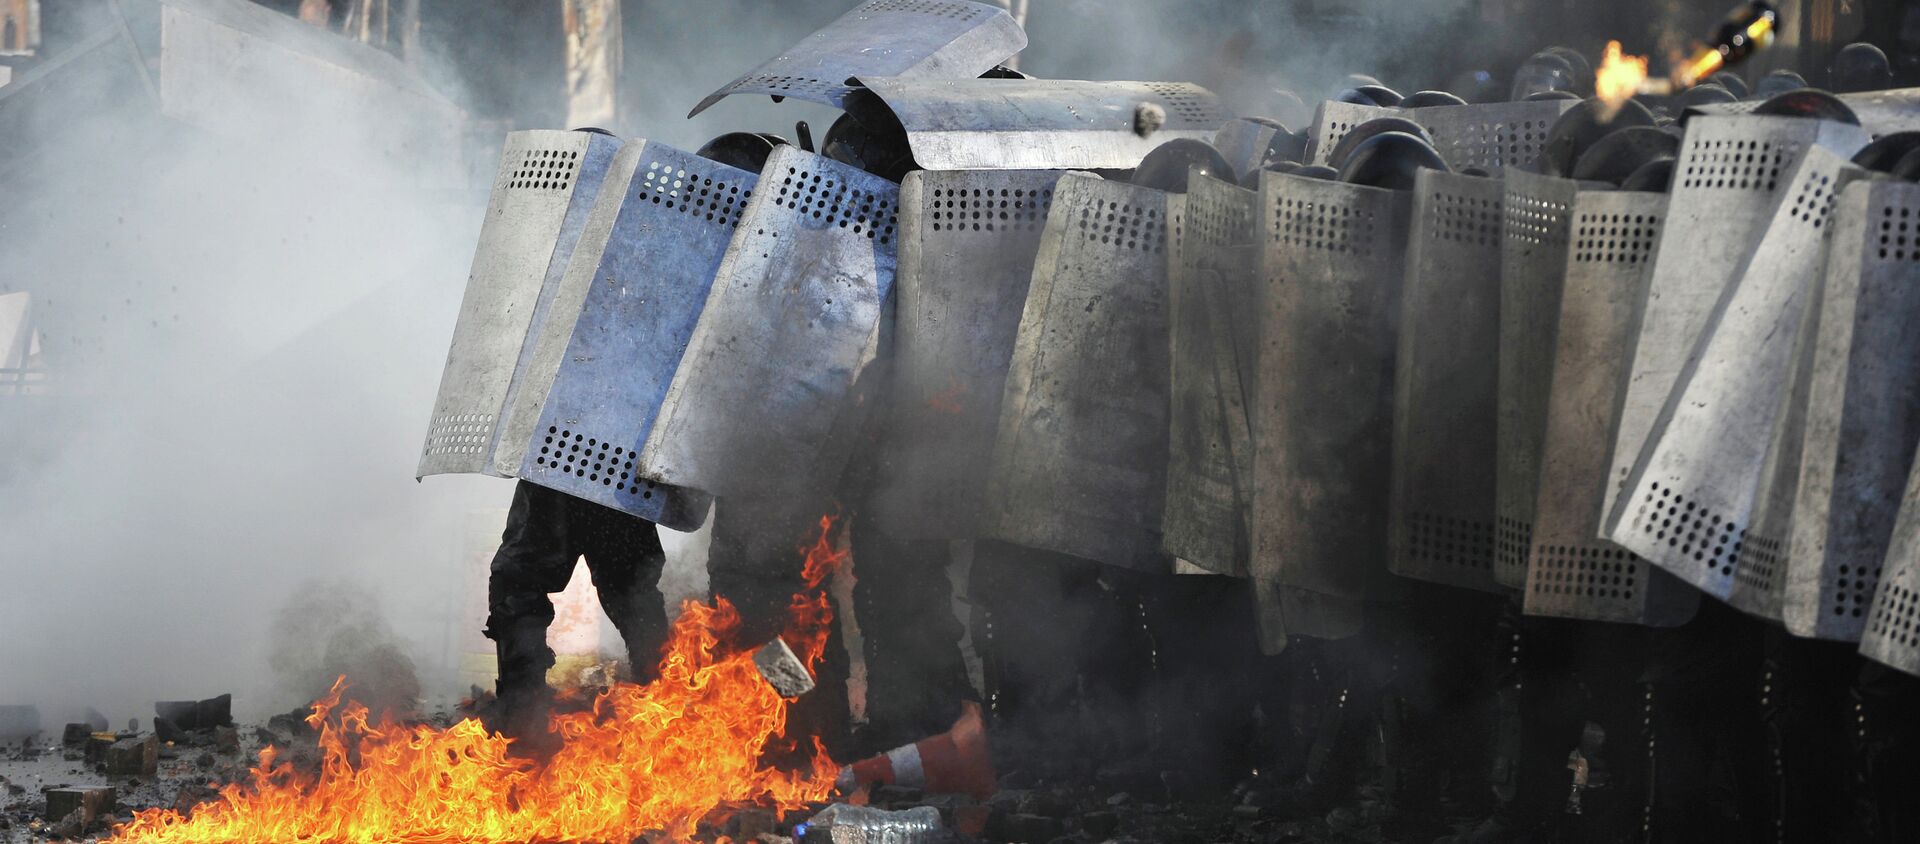 Ataques con cócteles Molotov contra la policía antidisturbios ucraniana Berkut durante los enfrentamientos en el Maidán (archivo, febrero 2014) - Sputnik Mundo, 1920, 14.02.2018